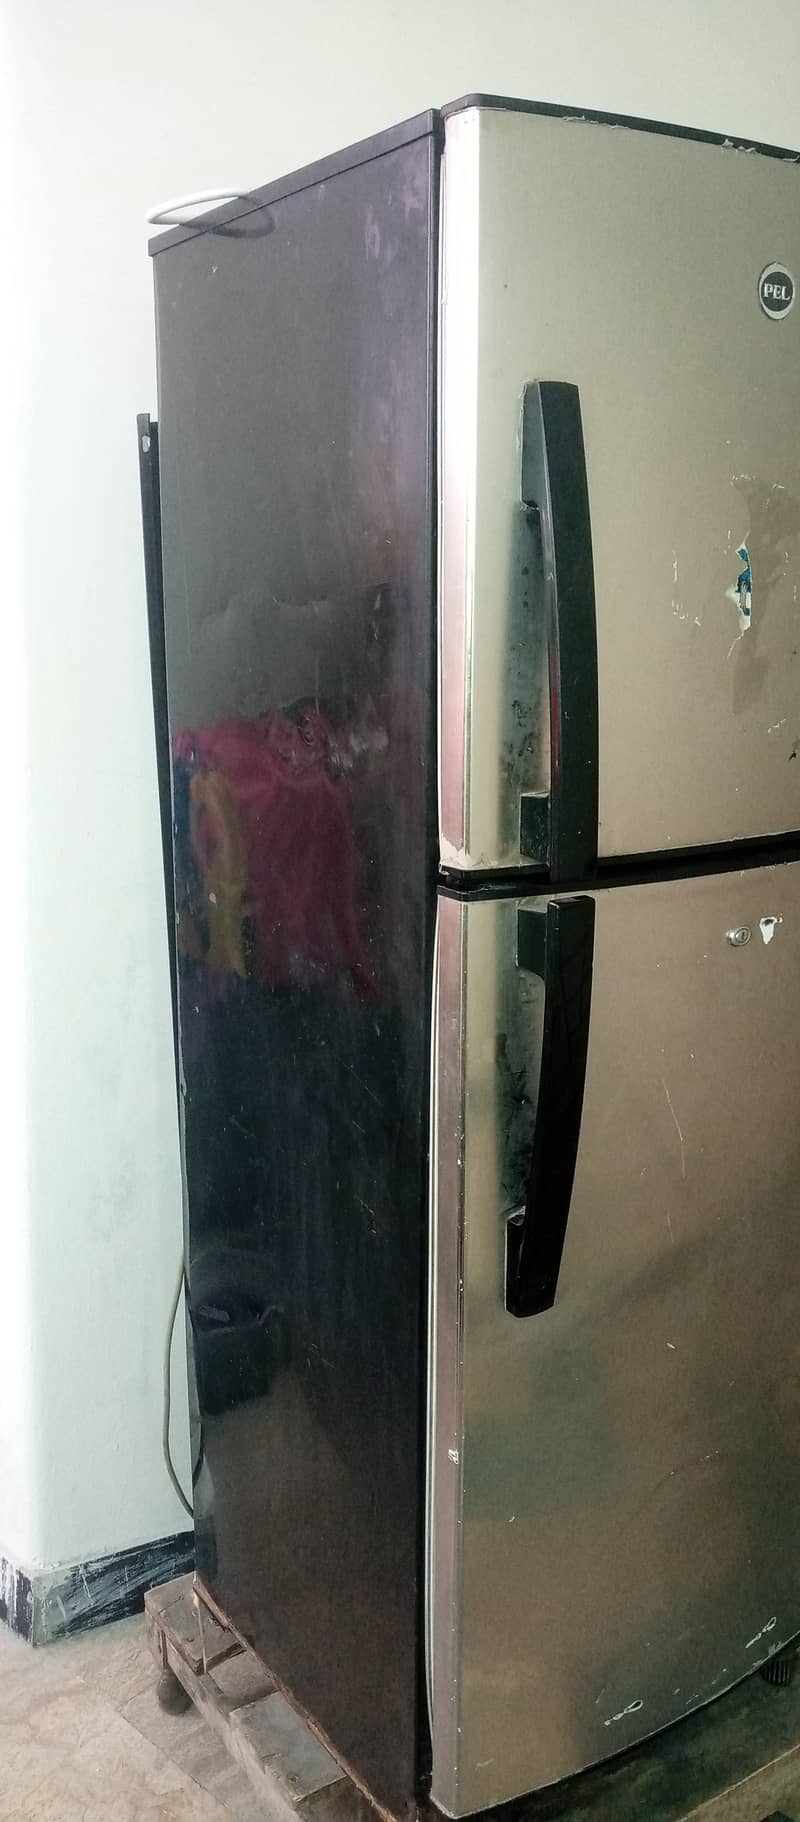 PEL Refrigerator 0